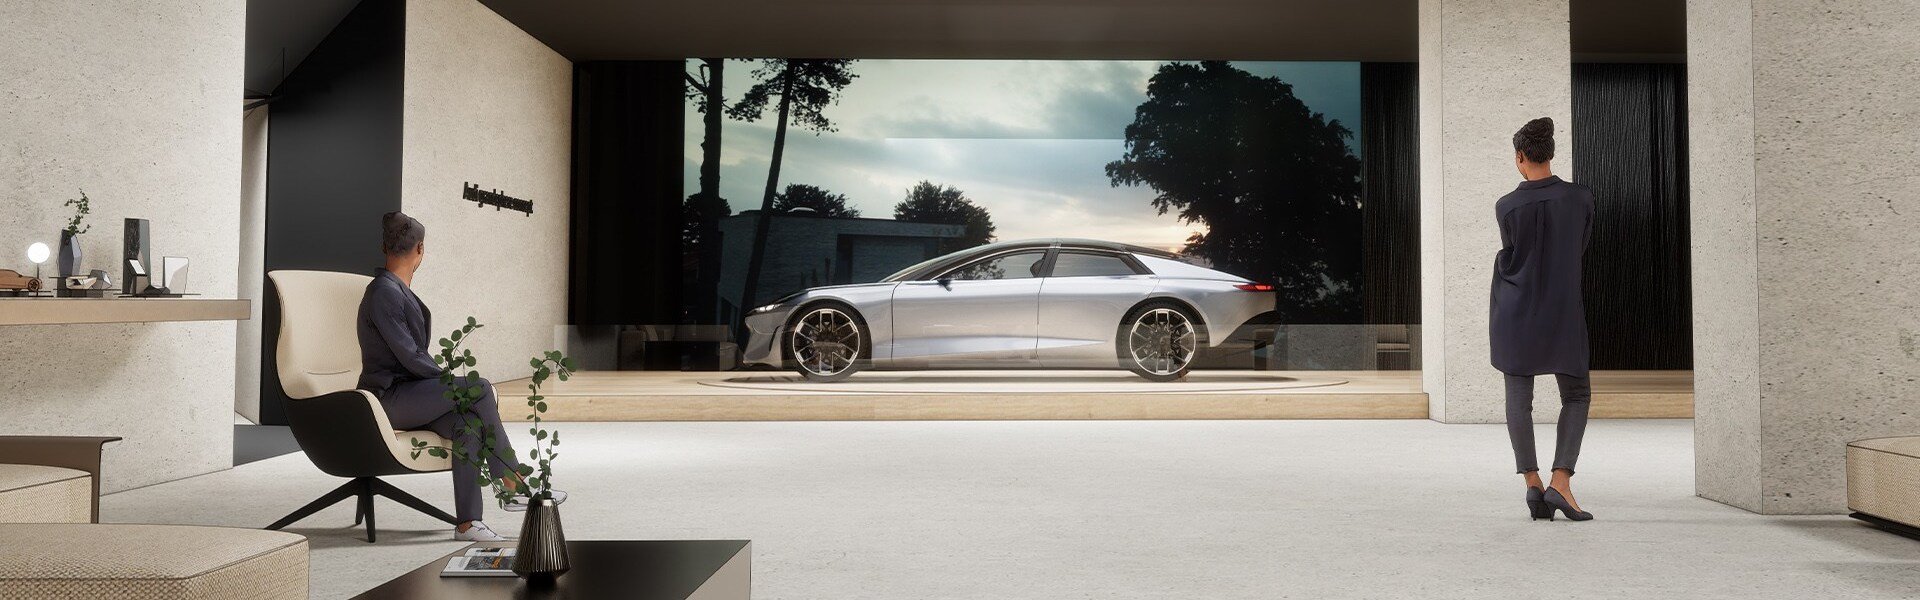 Konceptno vozilo Audi grandsphere kot del koncepta »re-generacija« predstavlja vizijo prihodnje mobilnosti na Milan Design Week 2022.